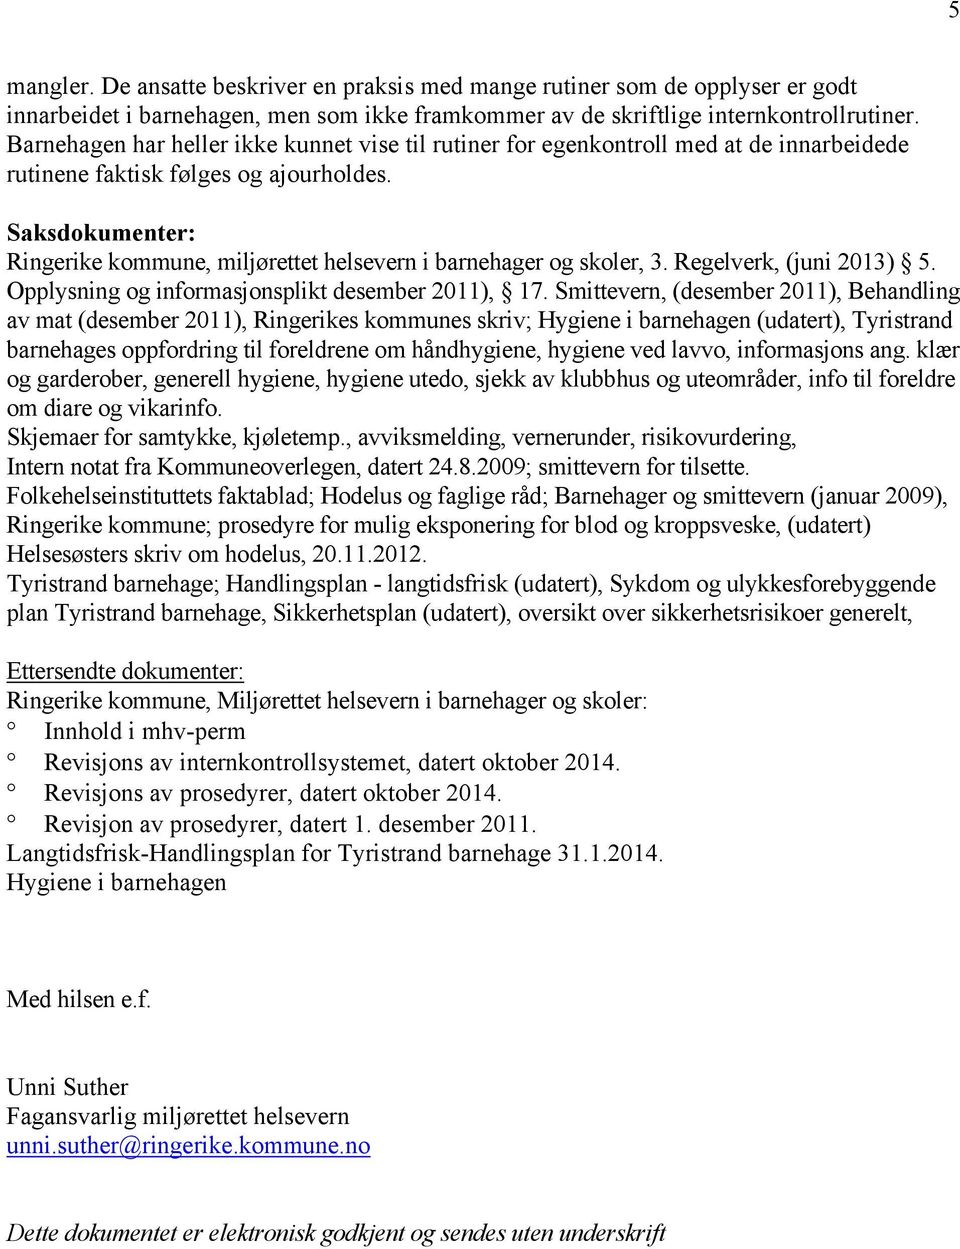 Saksdokumenter: Ringerike kommune, miljørettet helsevern i barnehager og skoler, 3. Regelverk, (juni 2013) 5. Opplysning og informasjonsplikt desember 2011), 17.